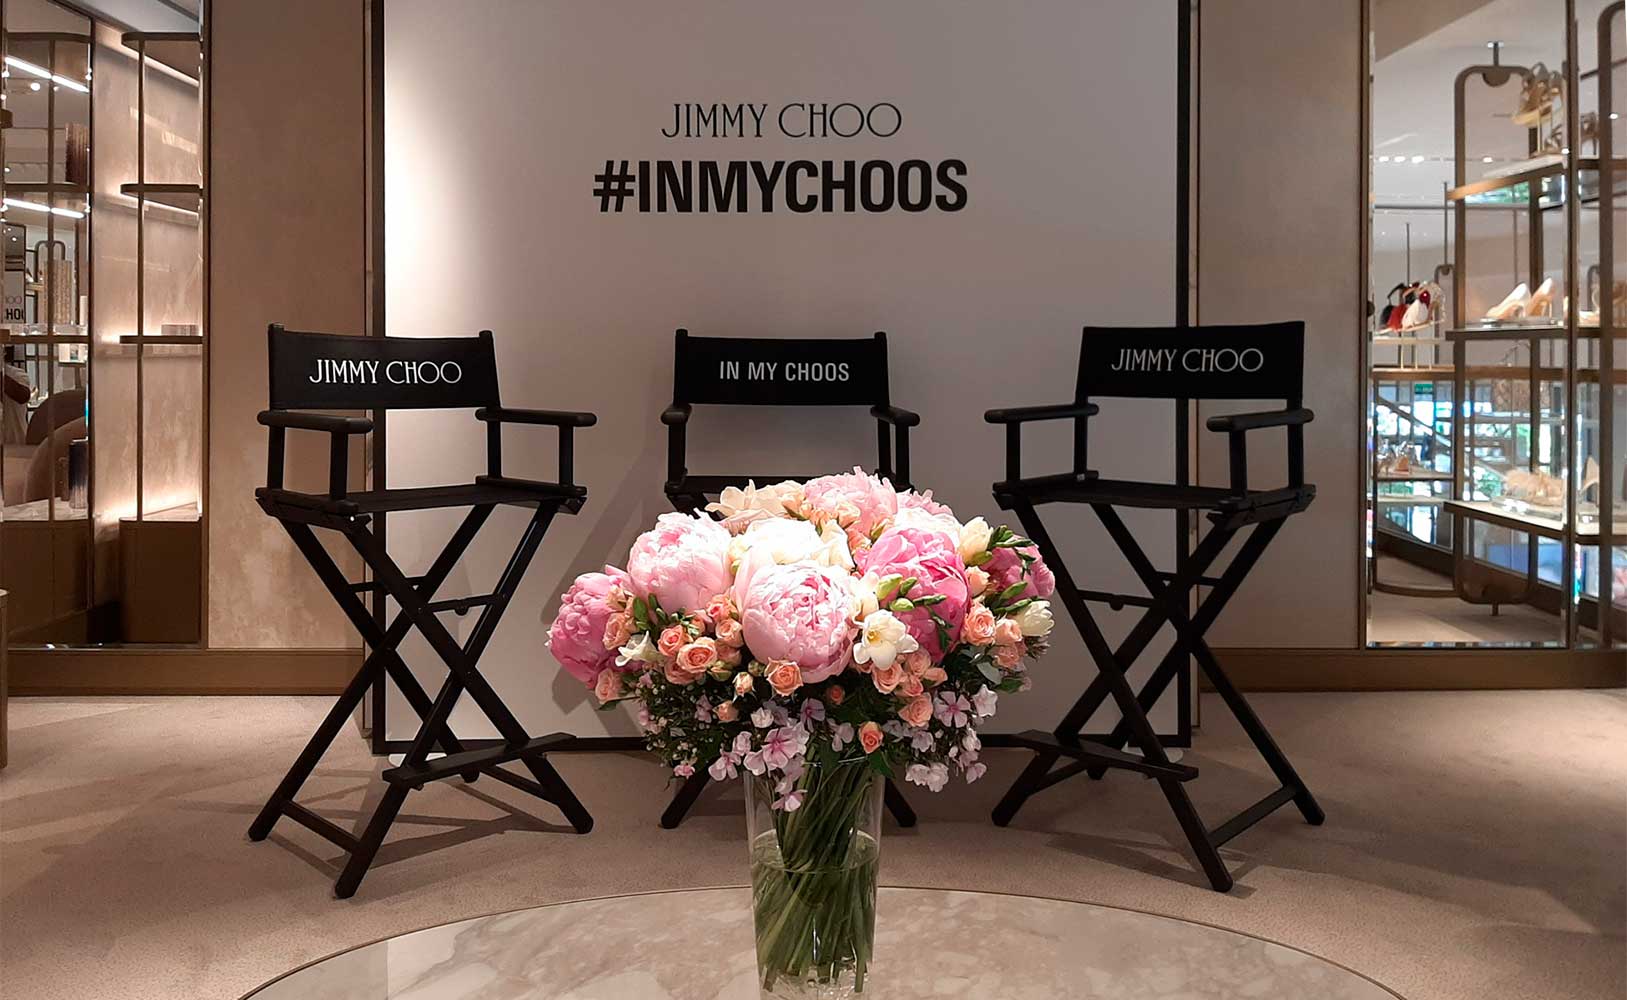 Comunicación gráfica para evento Jimmy Choo INMYCHOOS